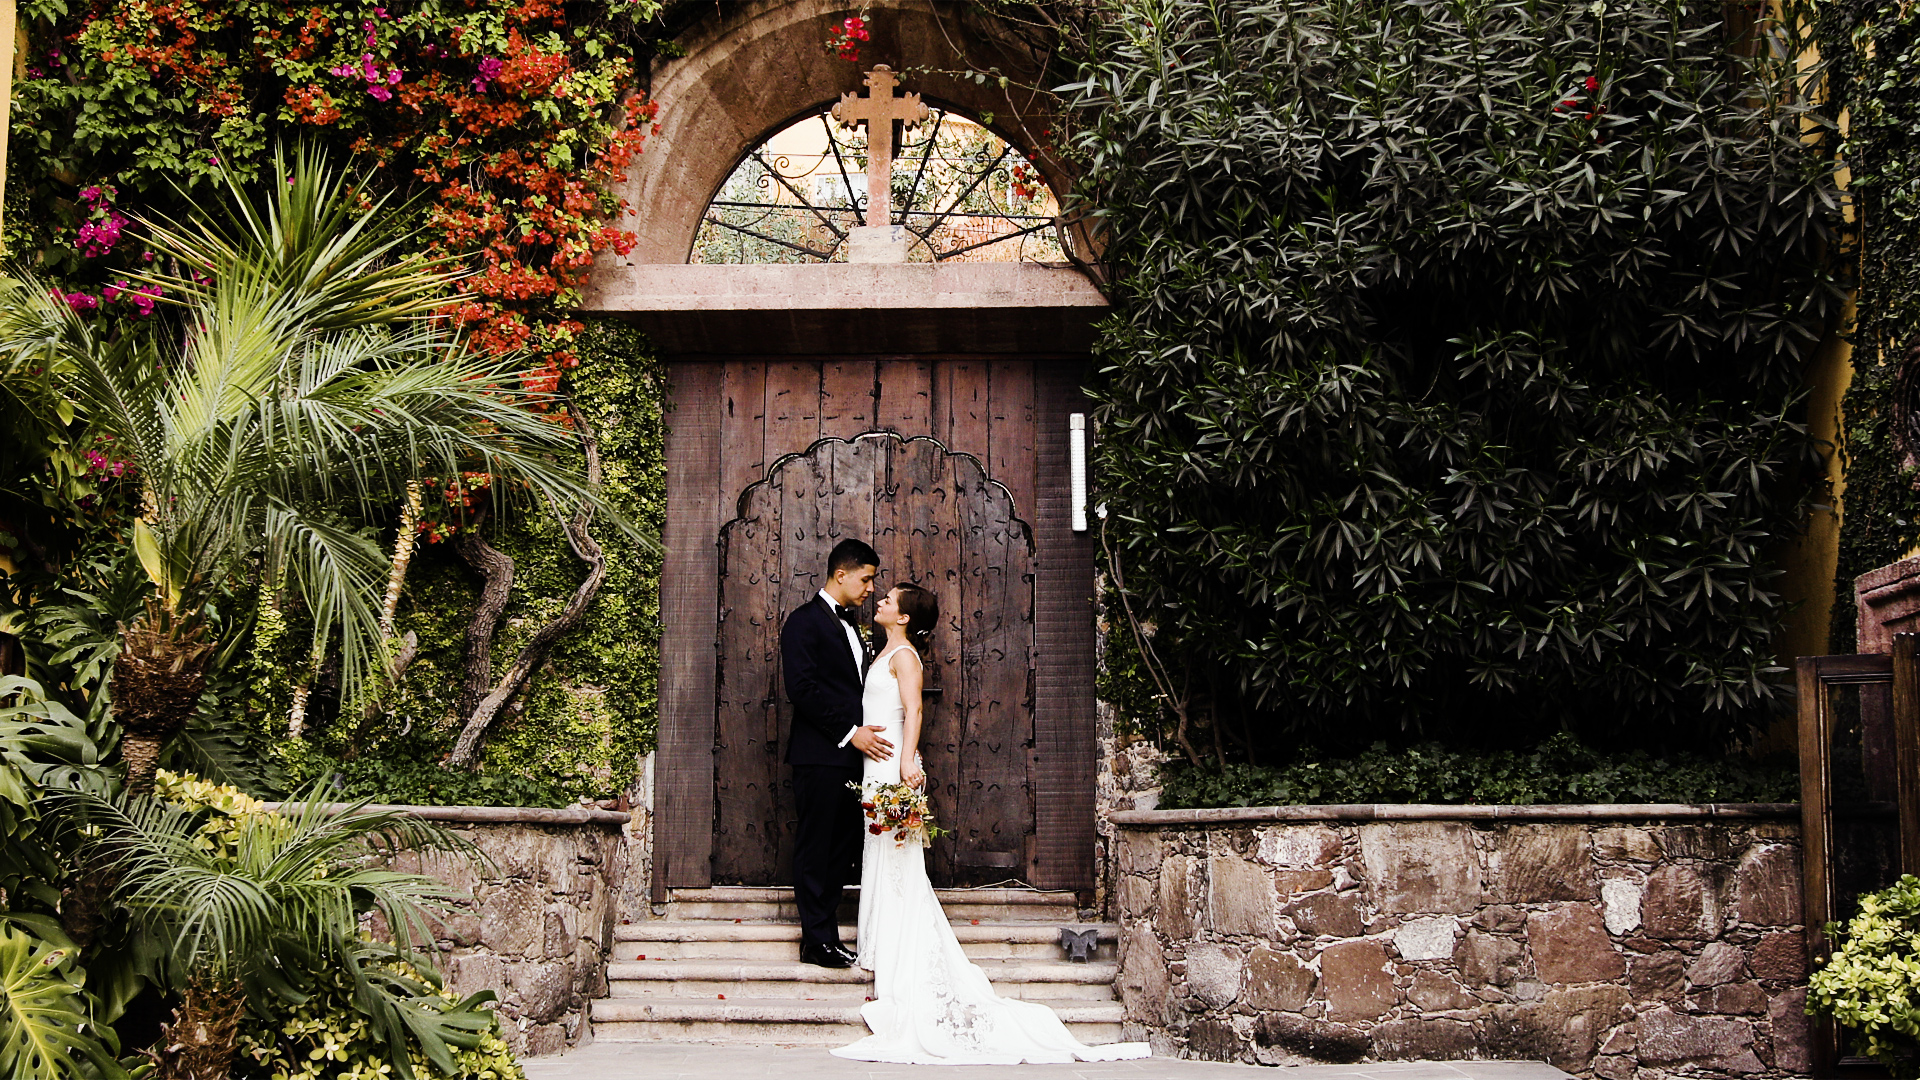 Fun And Adventurous Intimate Wedding In San Miguel De Allende